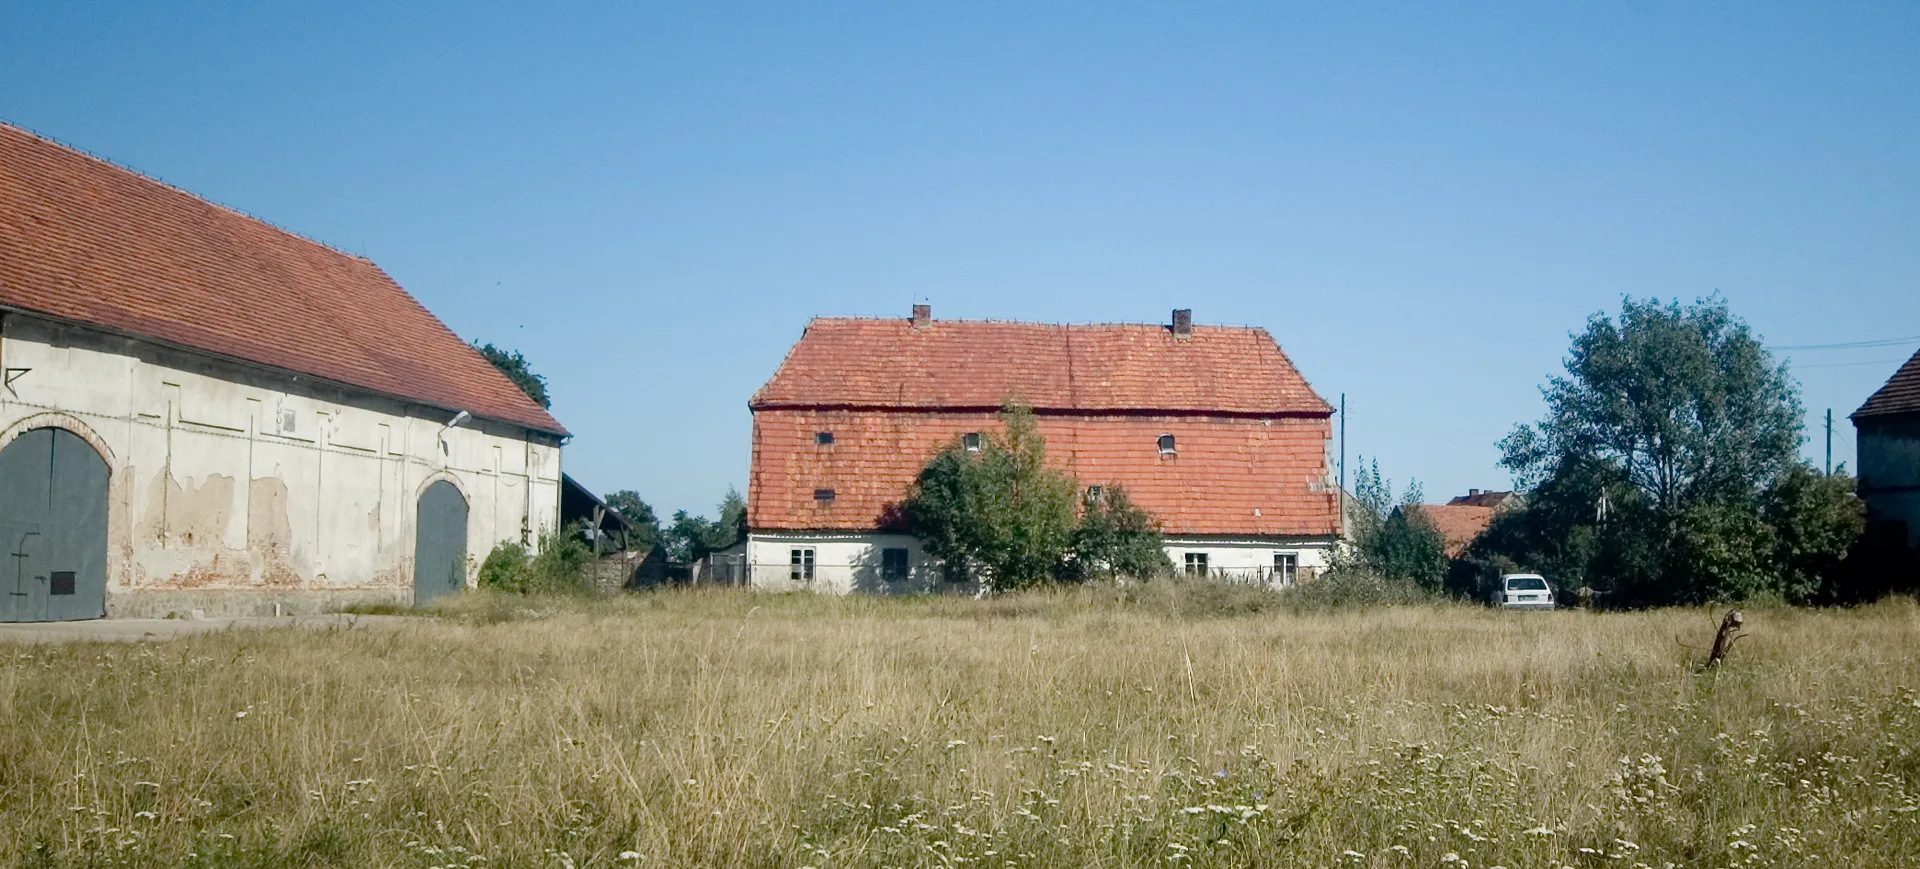 Photo showing: Oficyna dworska
Olbrachtowice, ul. Wronia 20, Sobótka